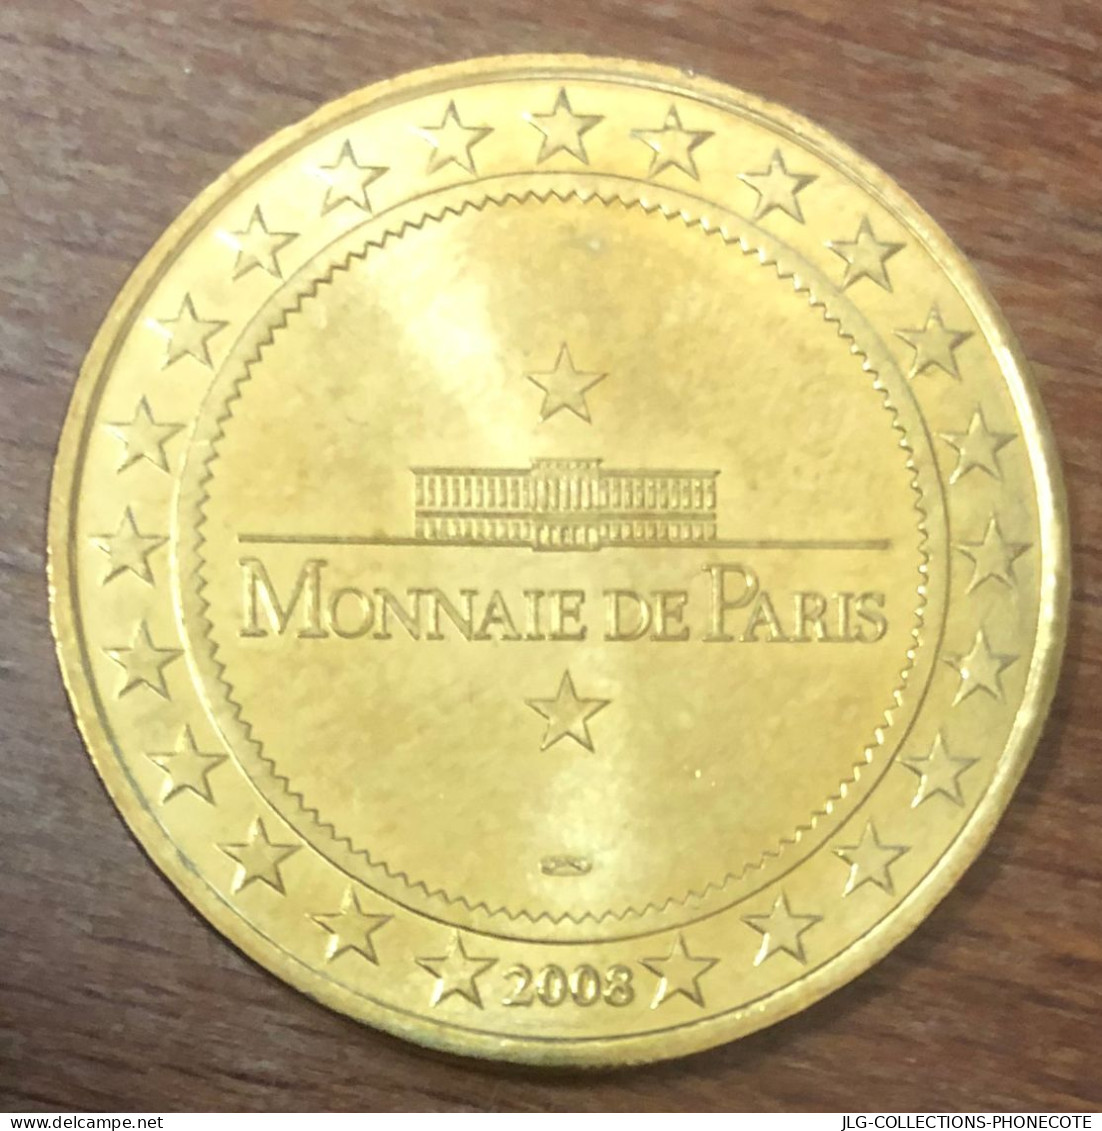 17 LA ROCHELLE PORT DE PLAISANCE MDP 2008 MEDAILLE SOUVENIR MONNAIE DE PARIS JETON TOURISTIQUE MEDALS COINS TOKENS - 2008